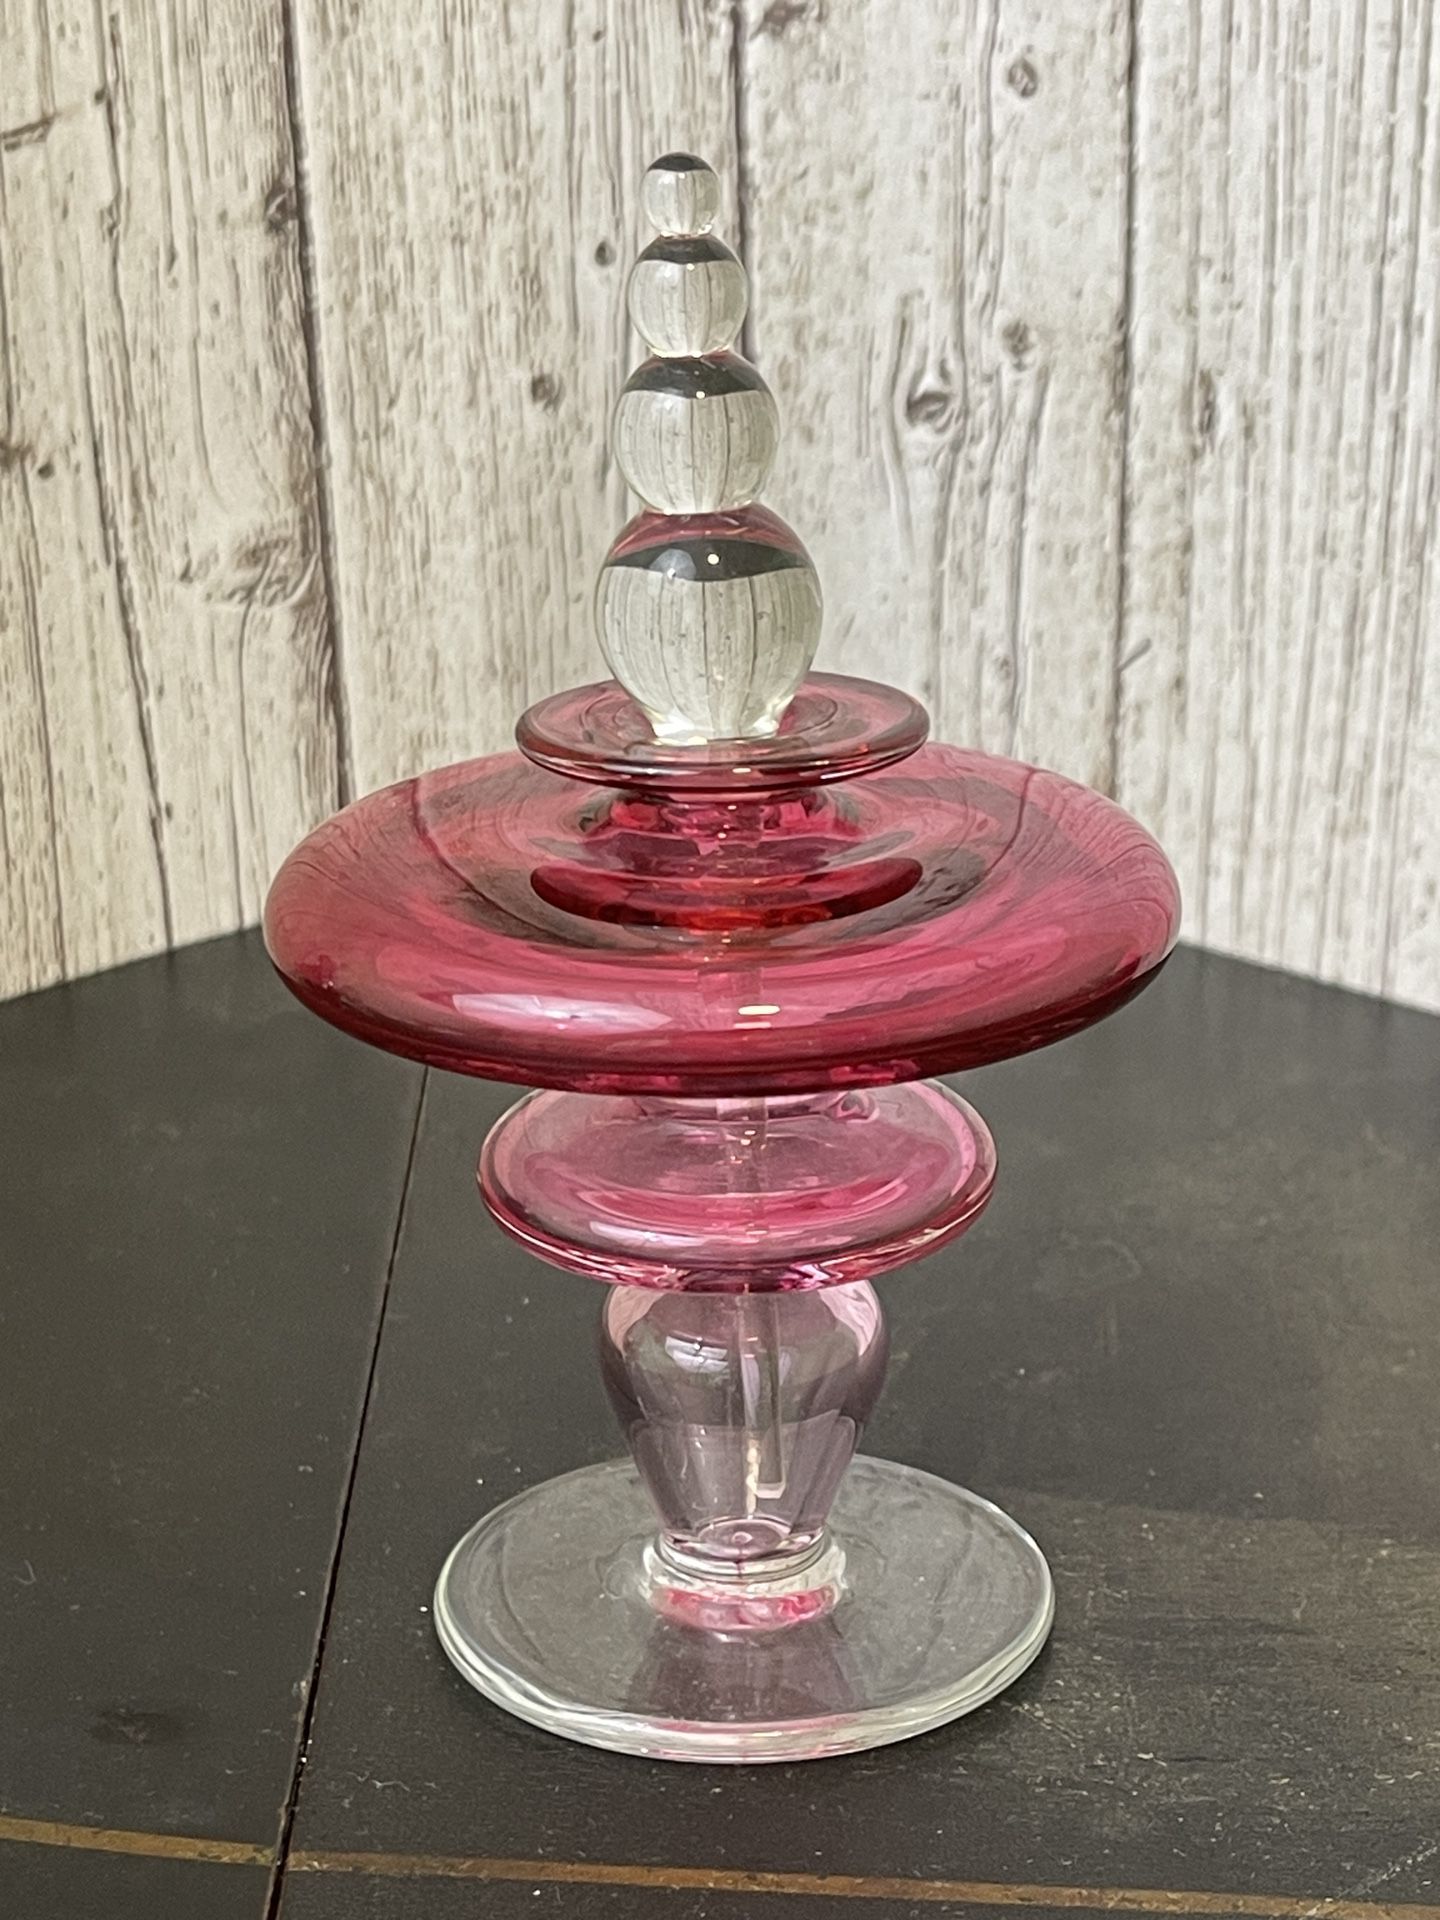 Vintage 1991 Italian Art Glass Pink Perfume Bottle 4 Spheres Stopper Signed